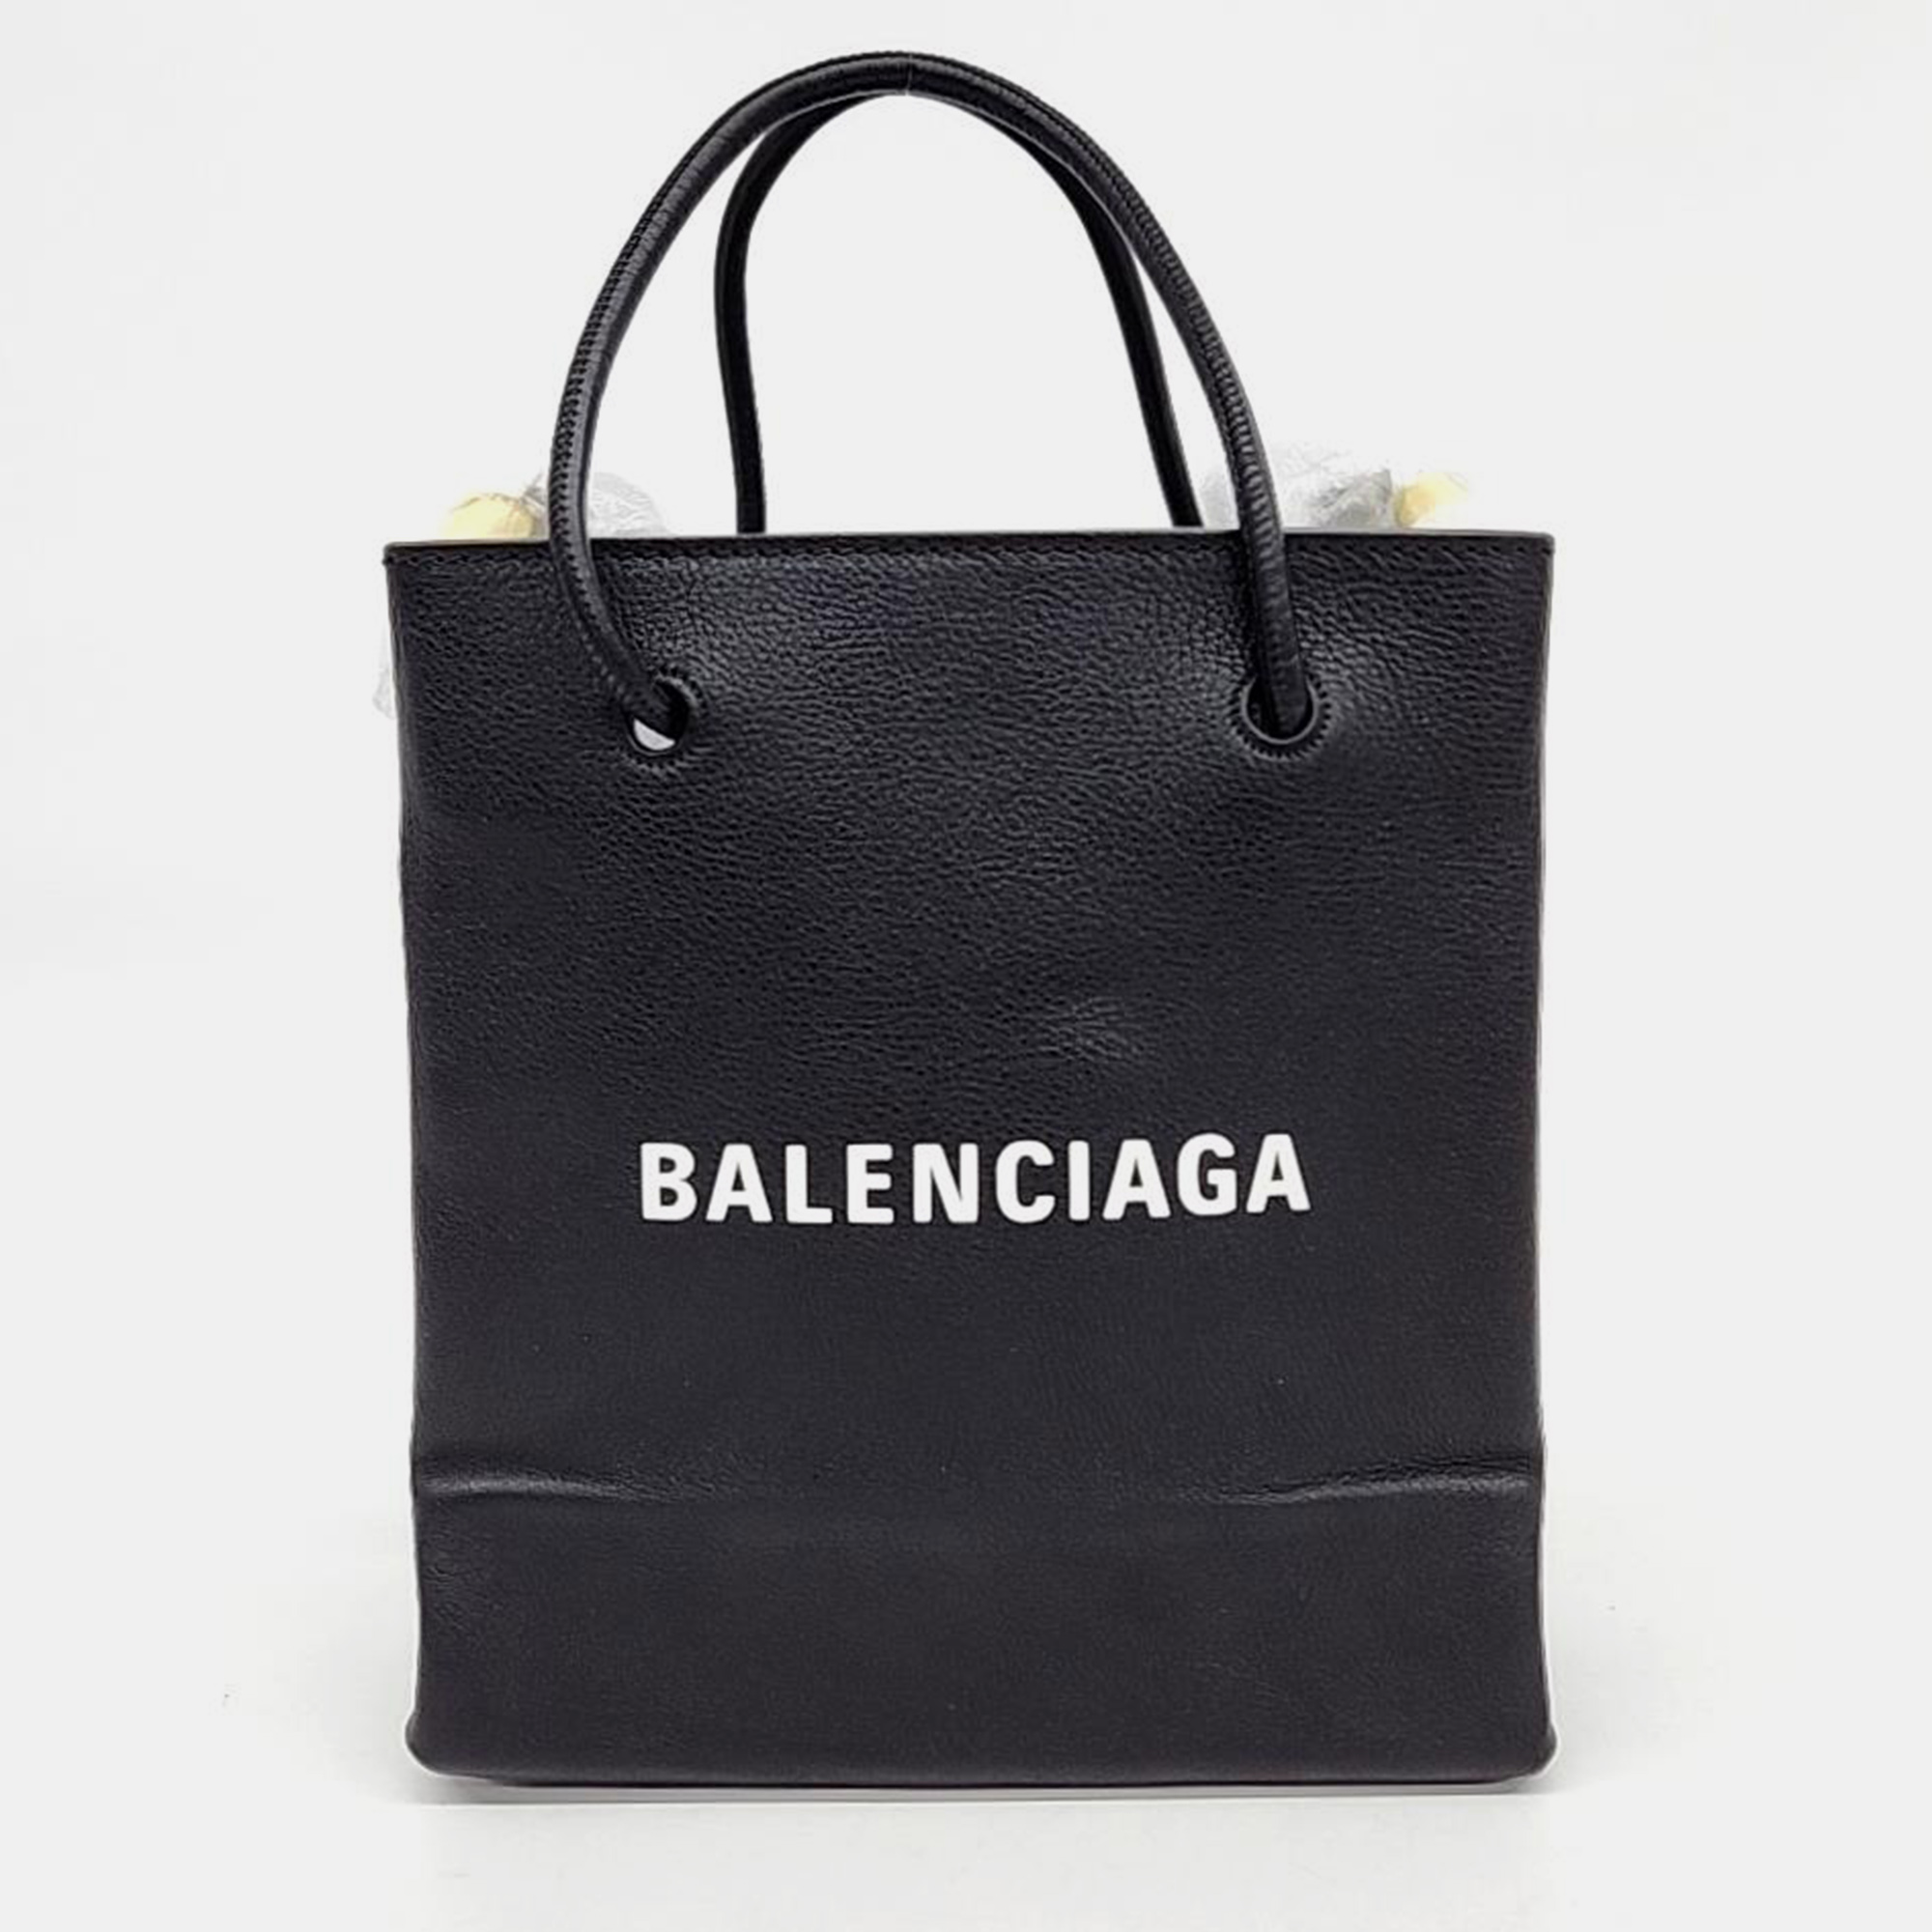 Balenciaga shopping tote bag